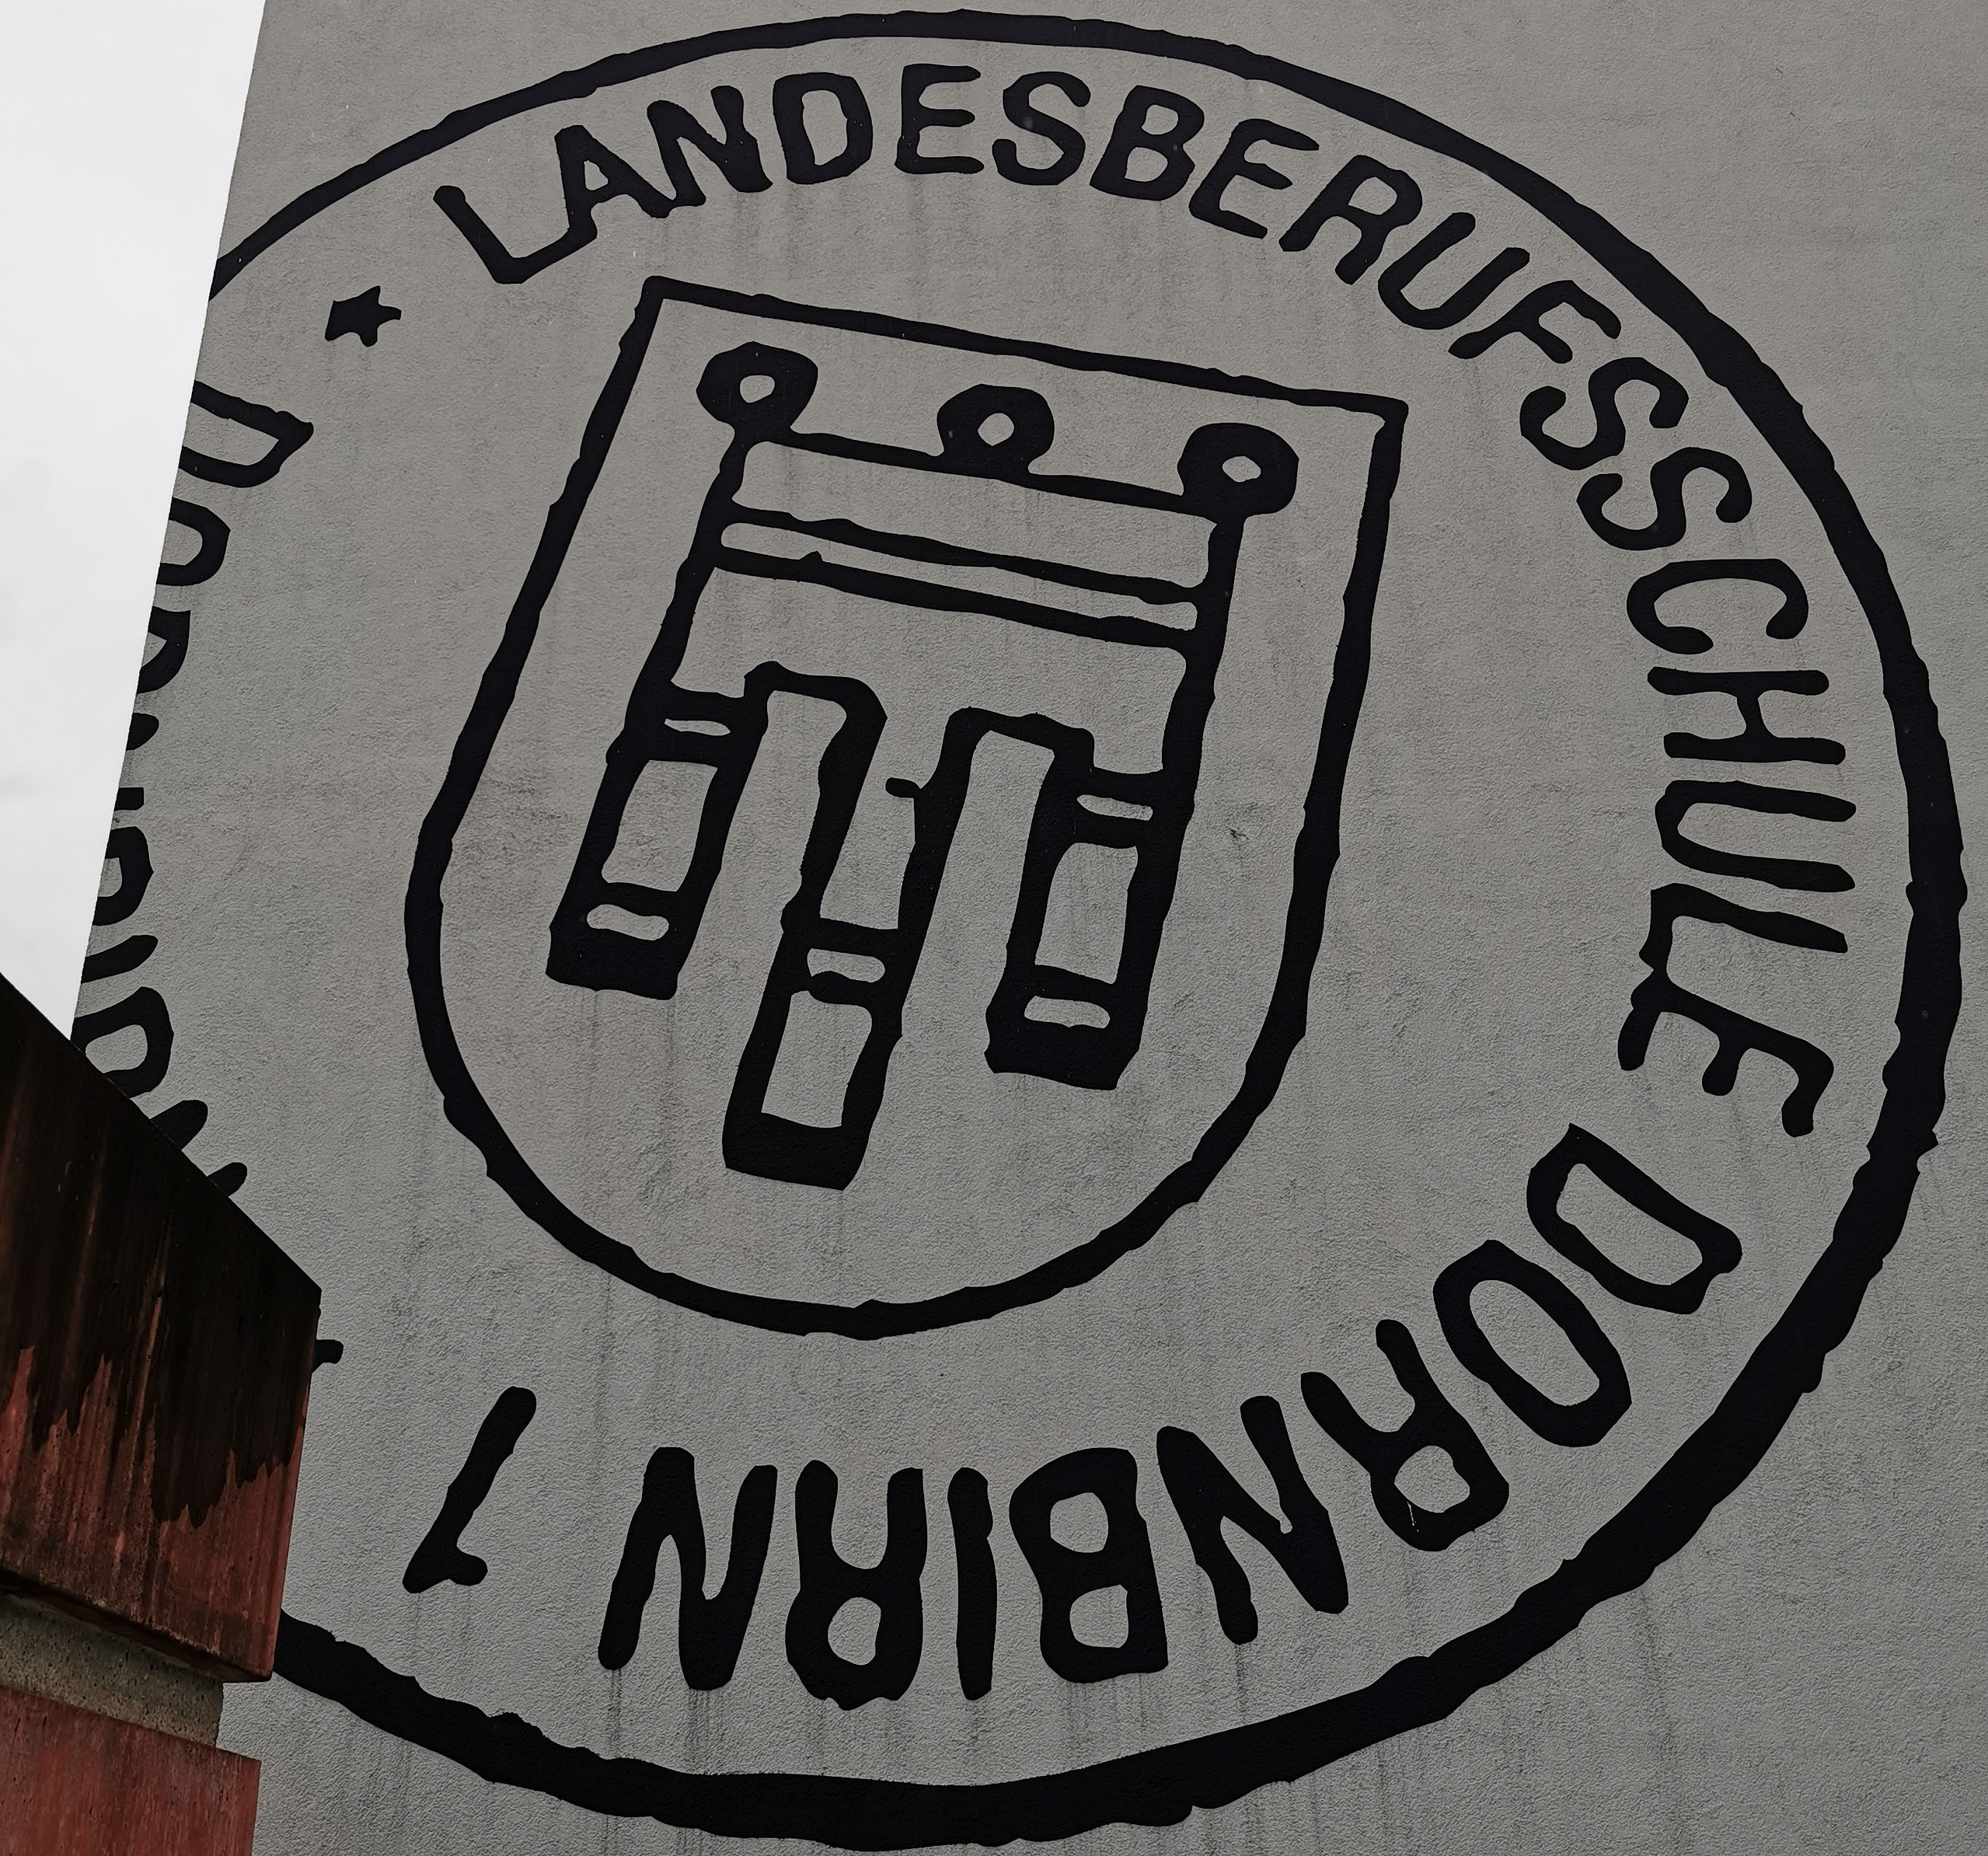 Logo der Landesberufsschule am Gebäude